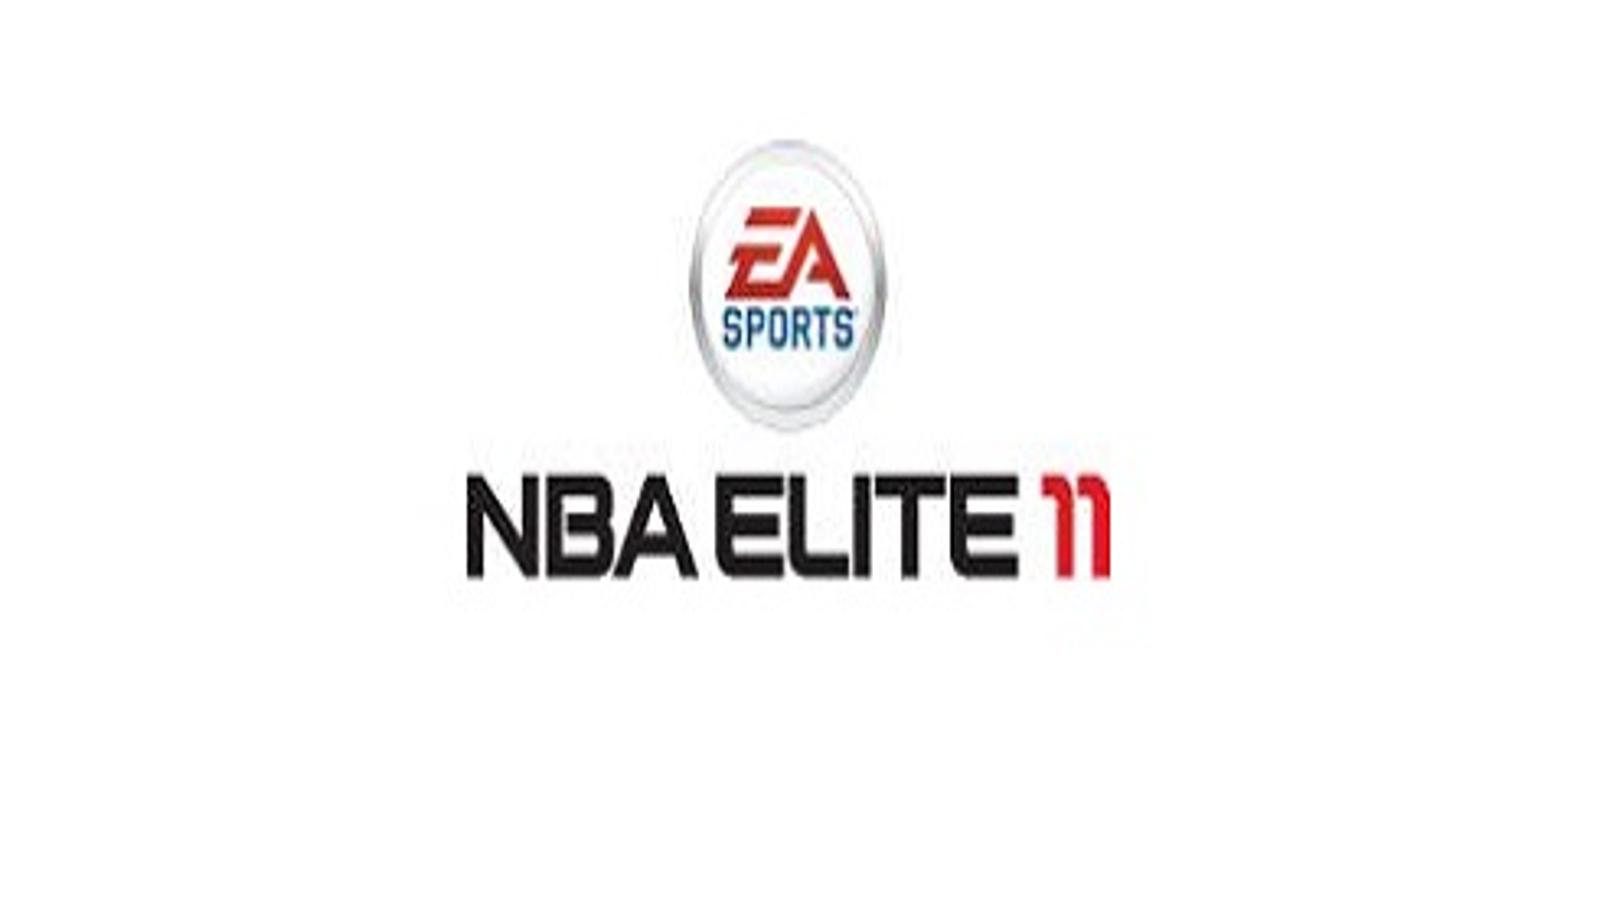 Video Games -- EA Sports Delays 'NBA Elite 11' - ESPN